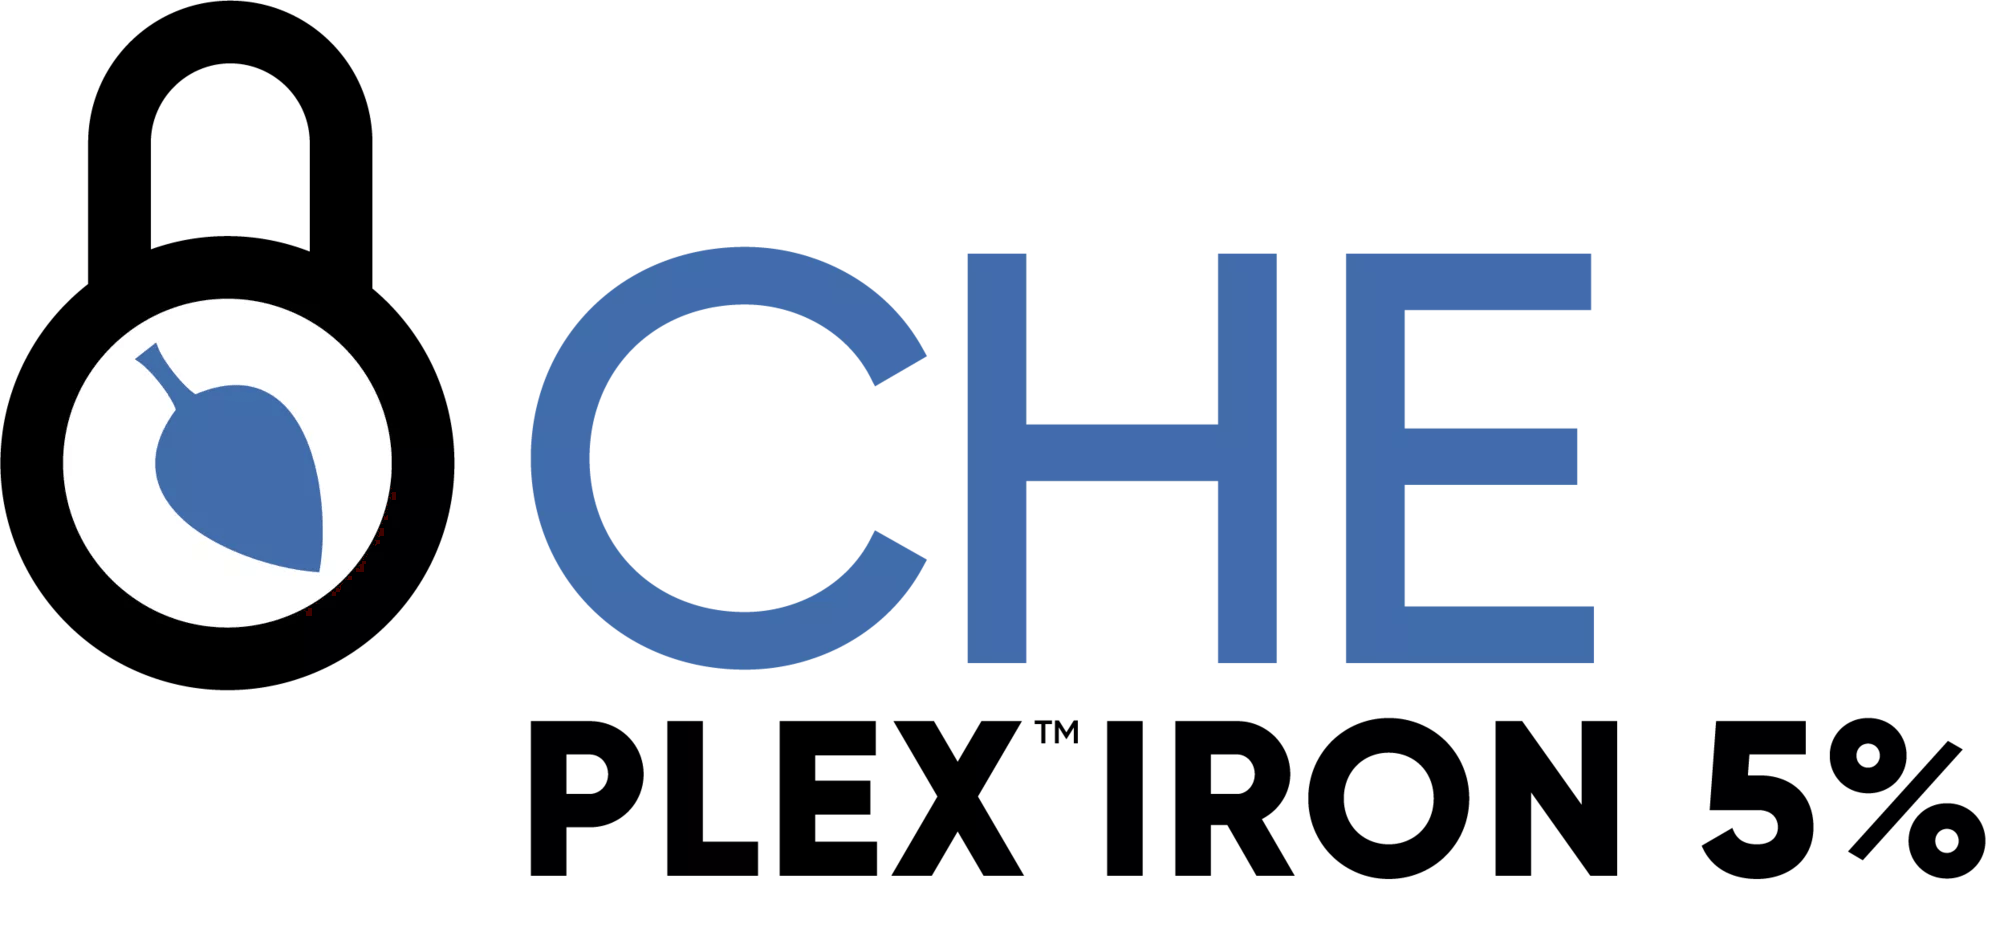 Che-Plex Iron 5% 5-0-0